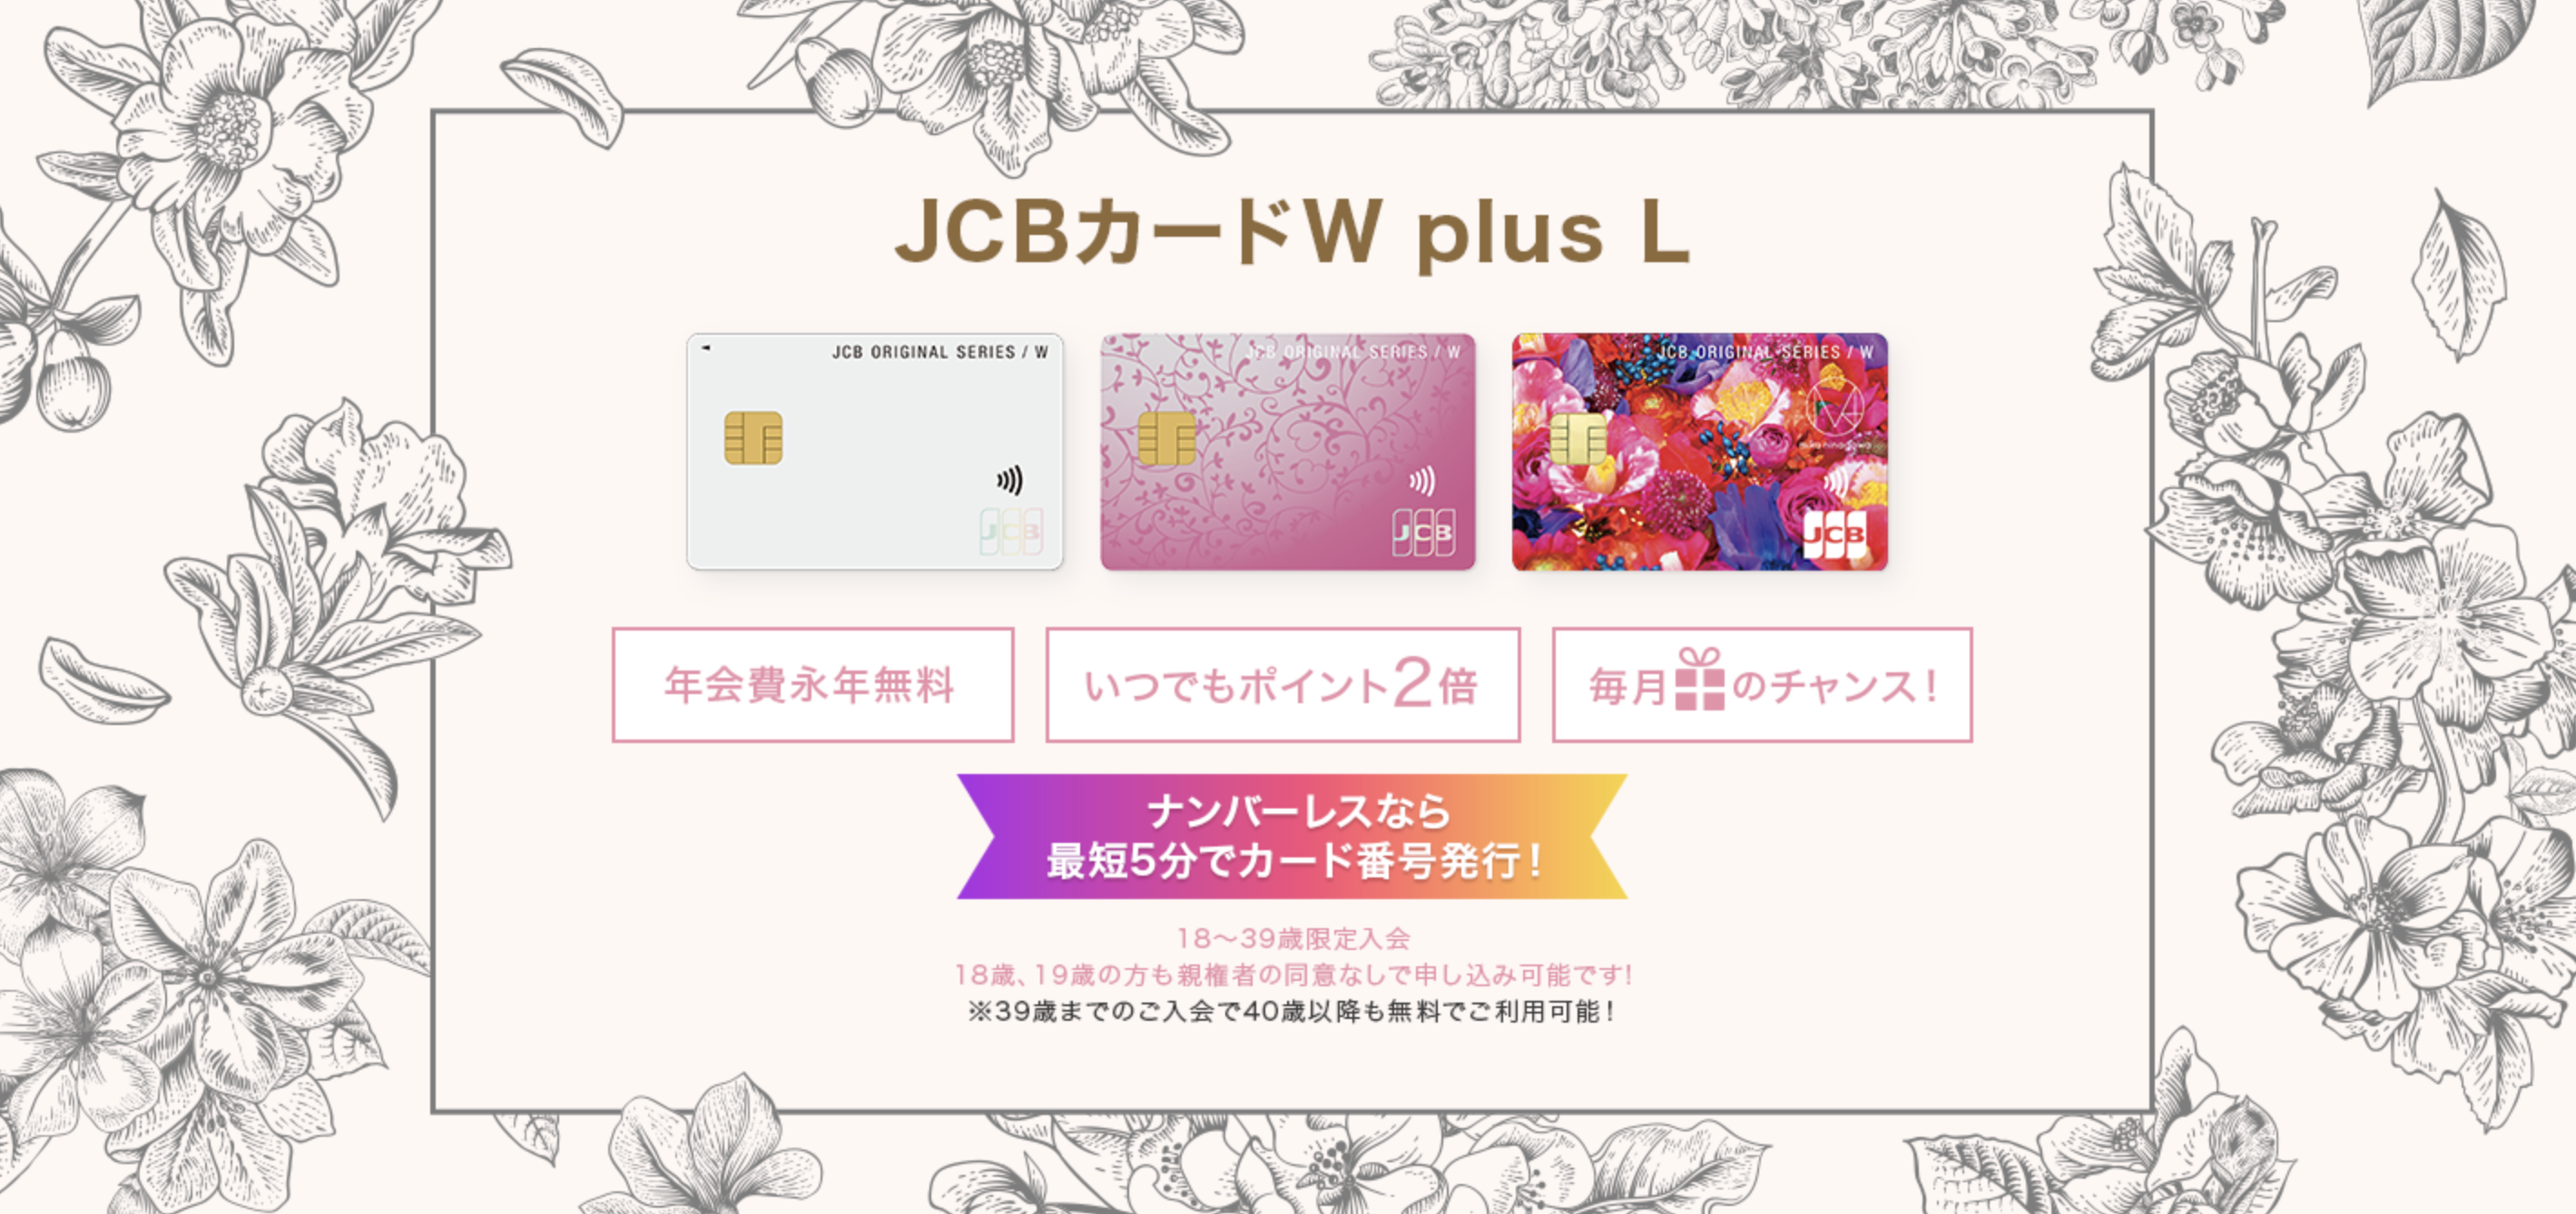 JCB CARD W plus L,特徴